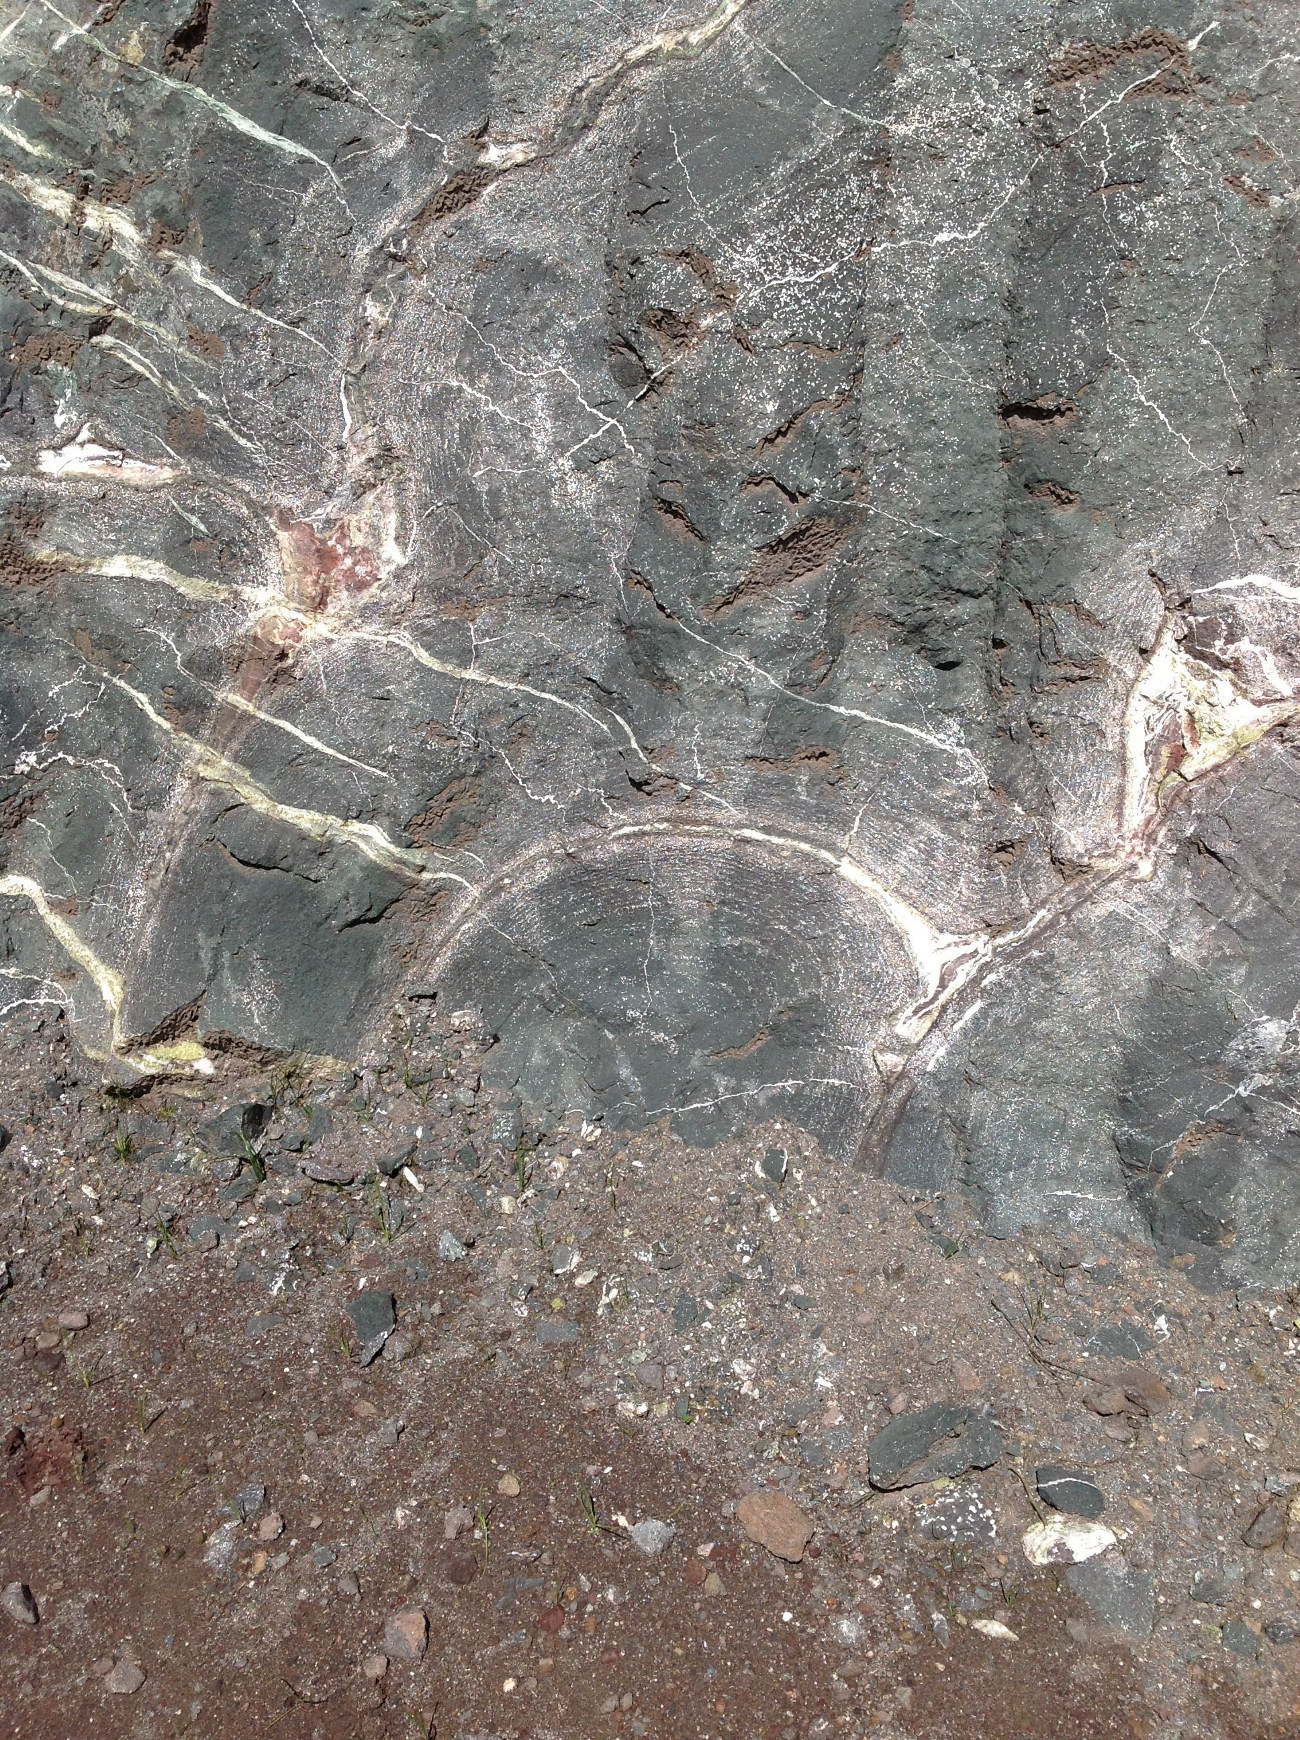 Pillow lava métasomatisé Méta-basalte hydrothermalisé Pyrénées  Eibar 